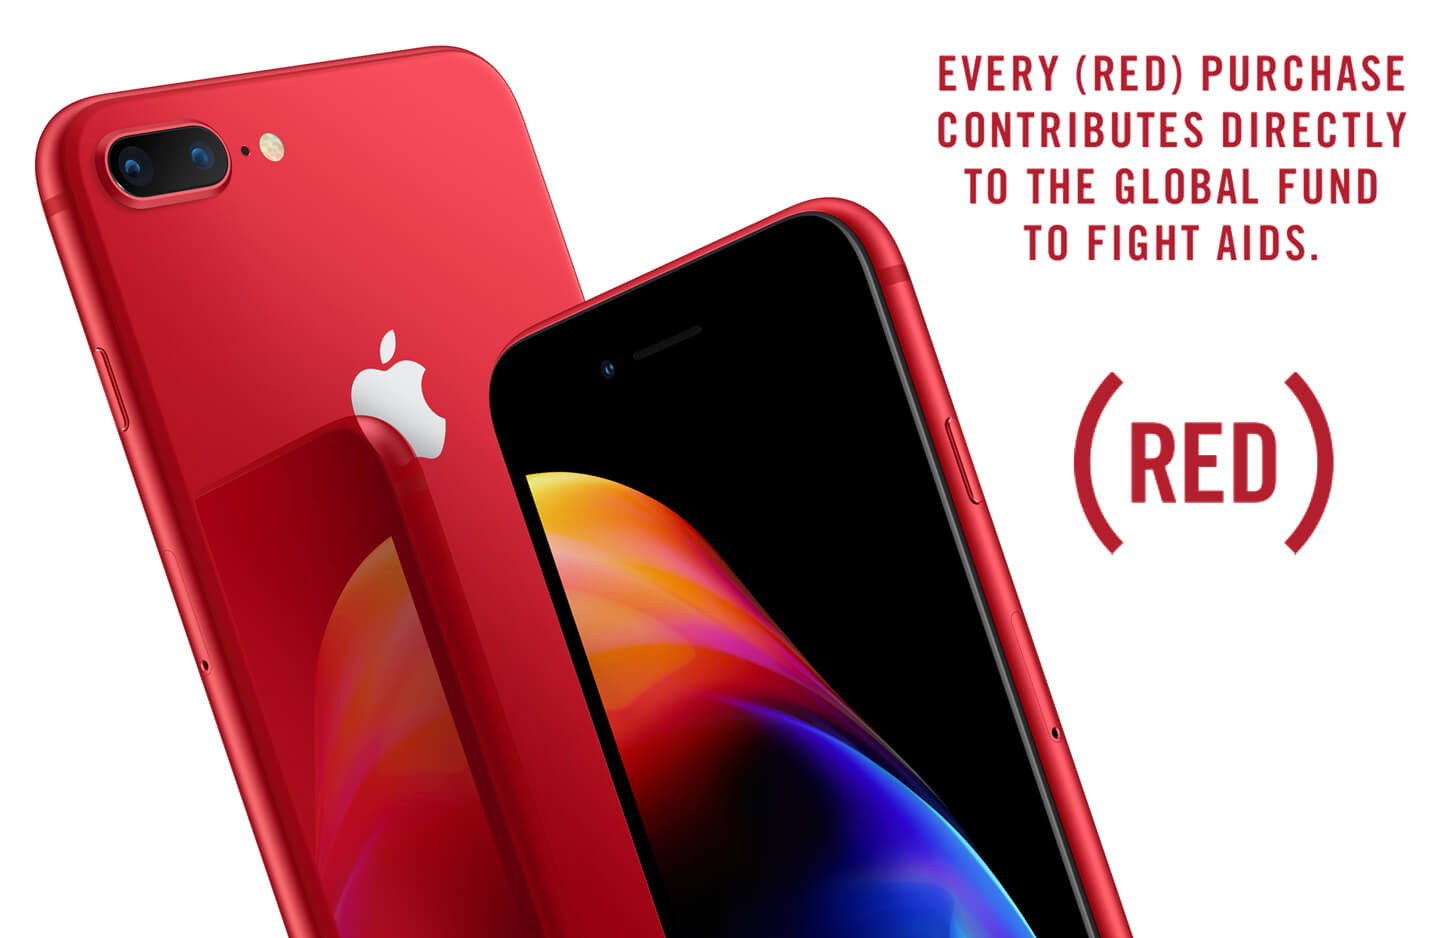 Apple iPhone 8 Plus RED